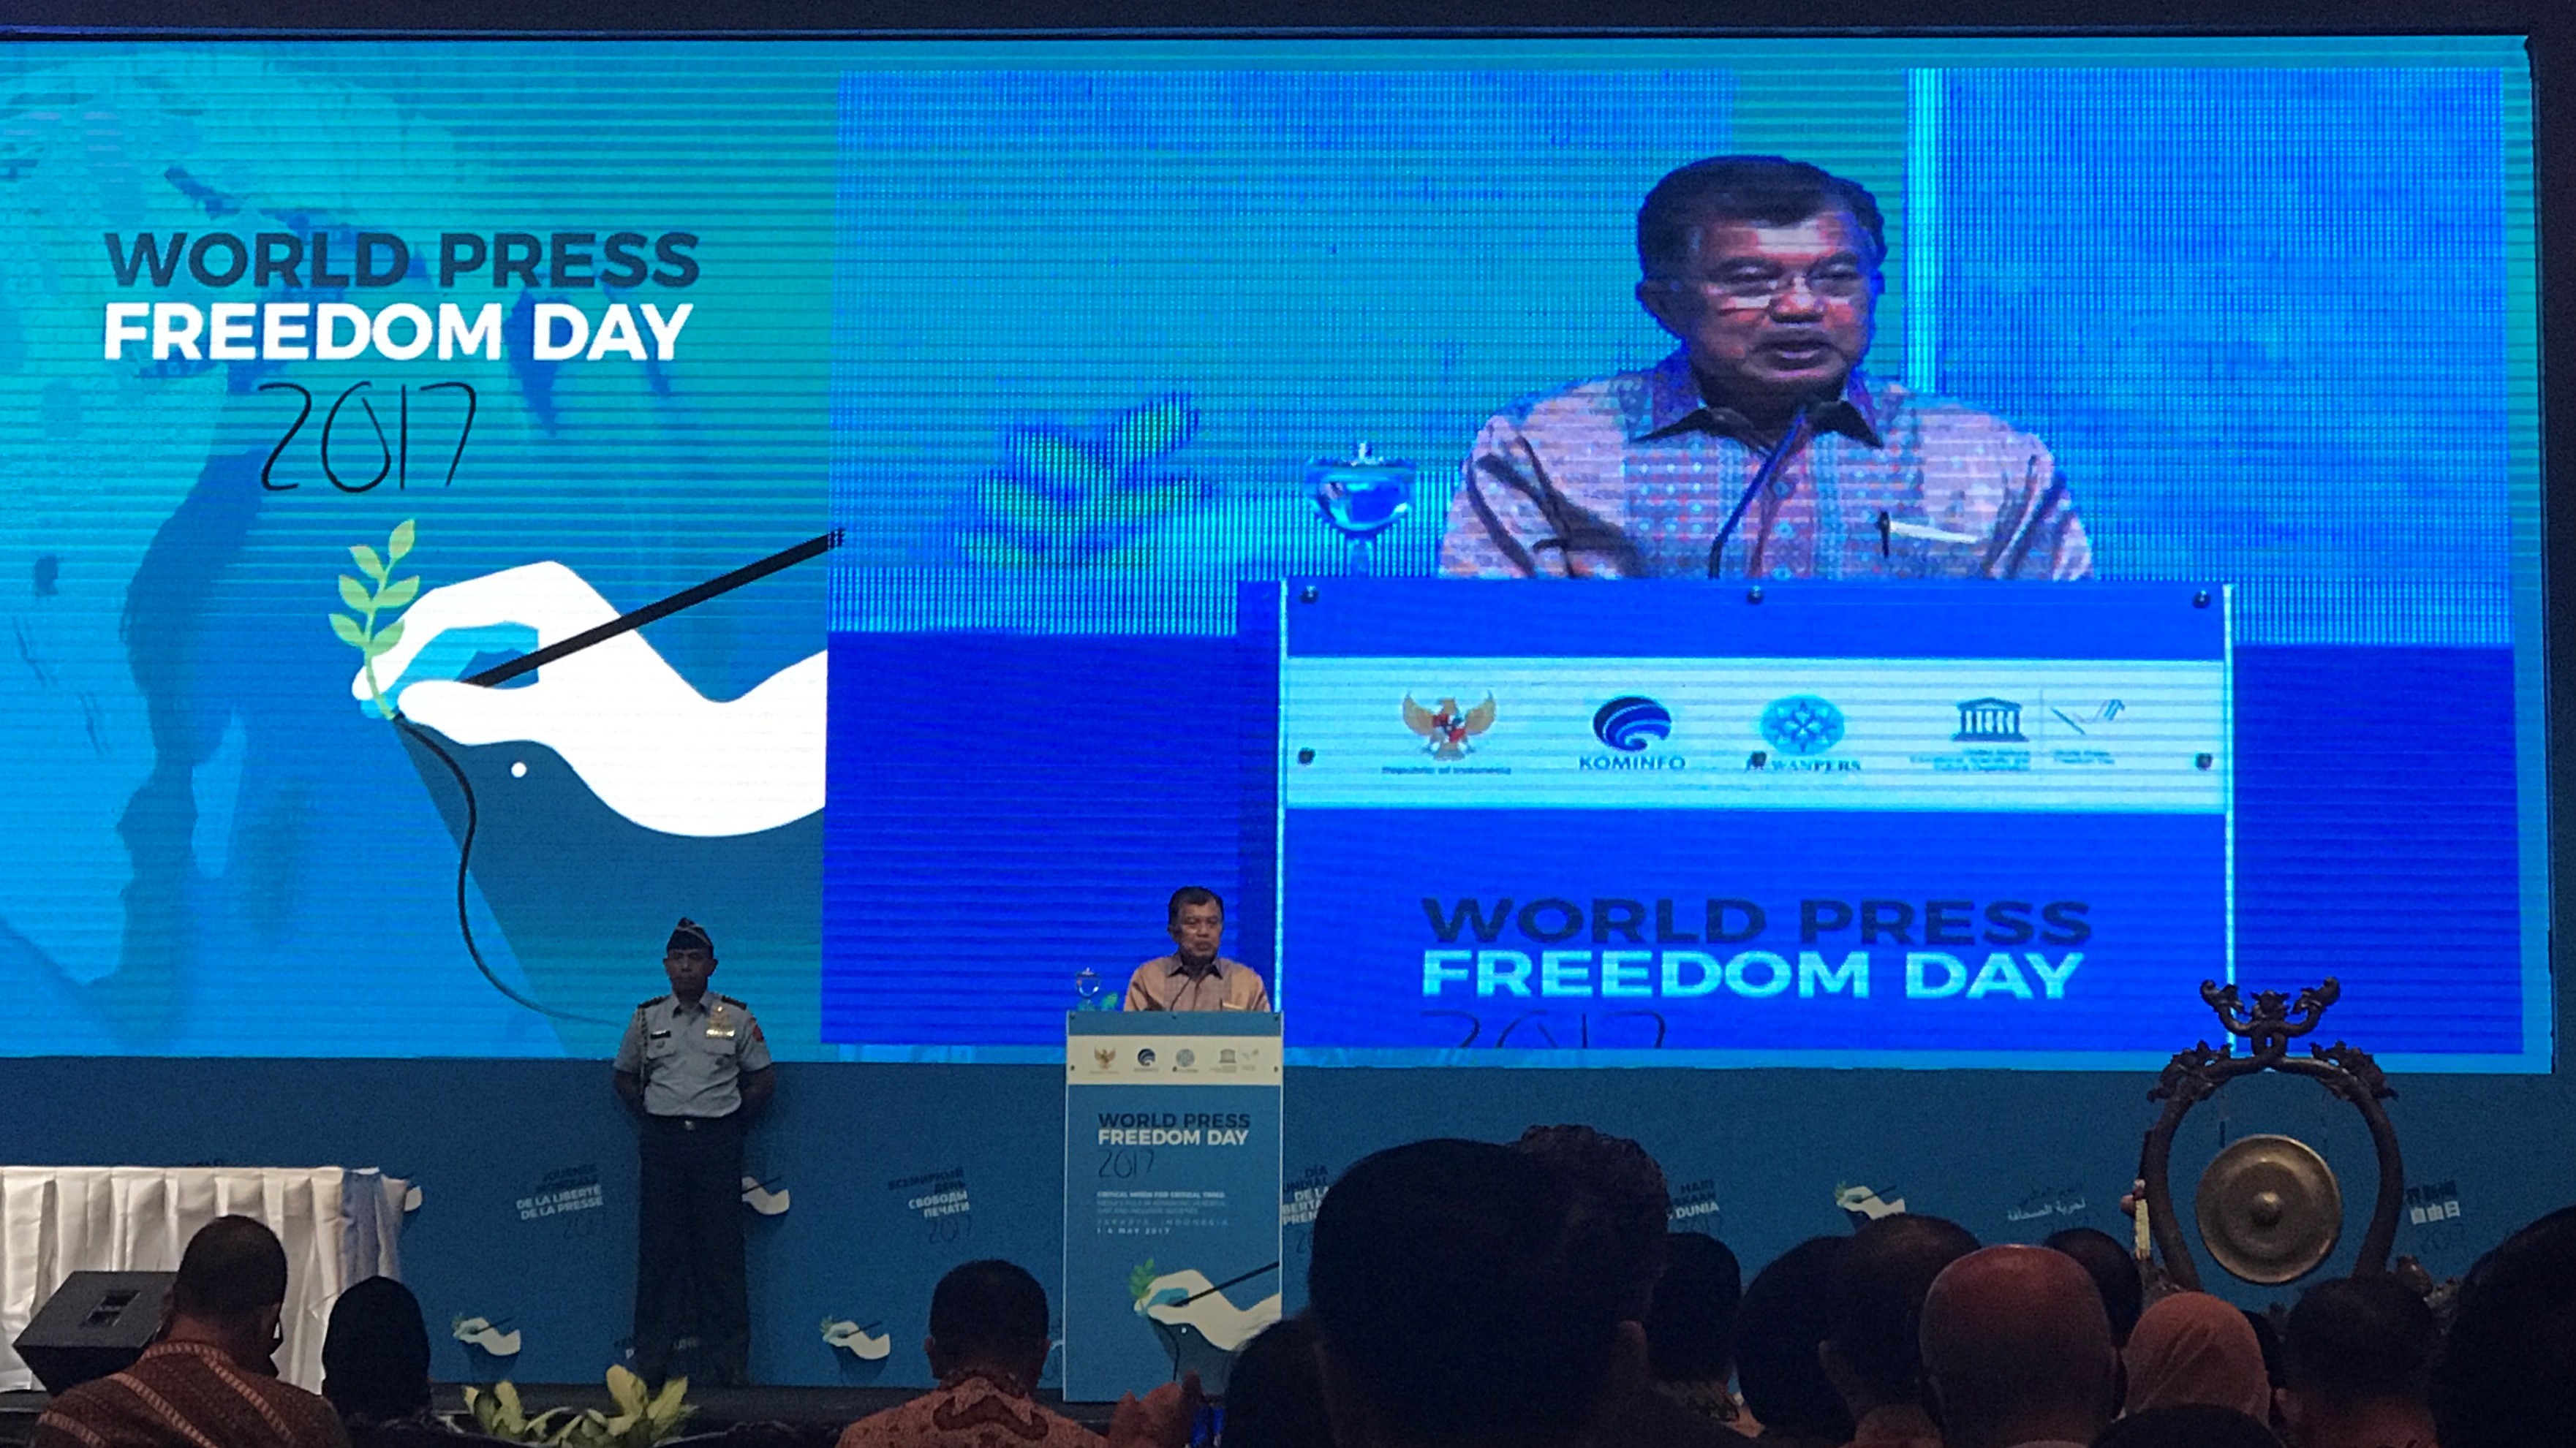 WPFD 2017, Wapres Tekankan Kebebasan Pers untuk Perdamaian